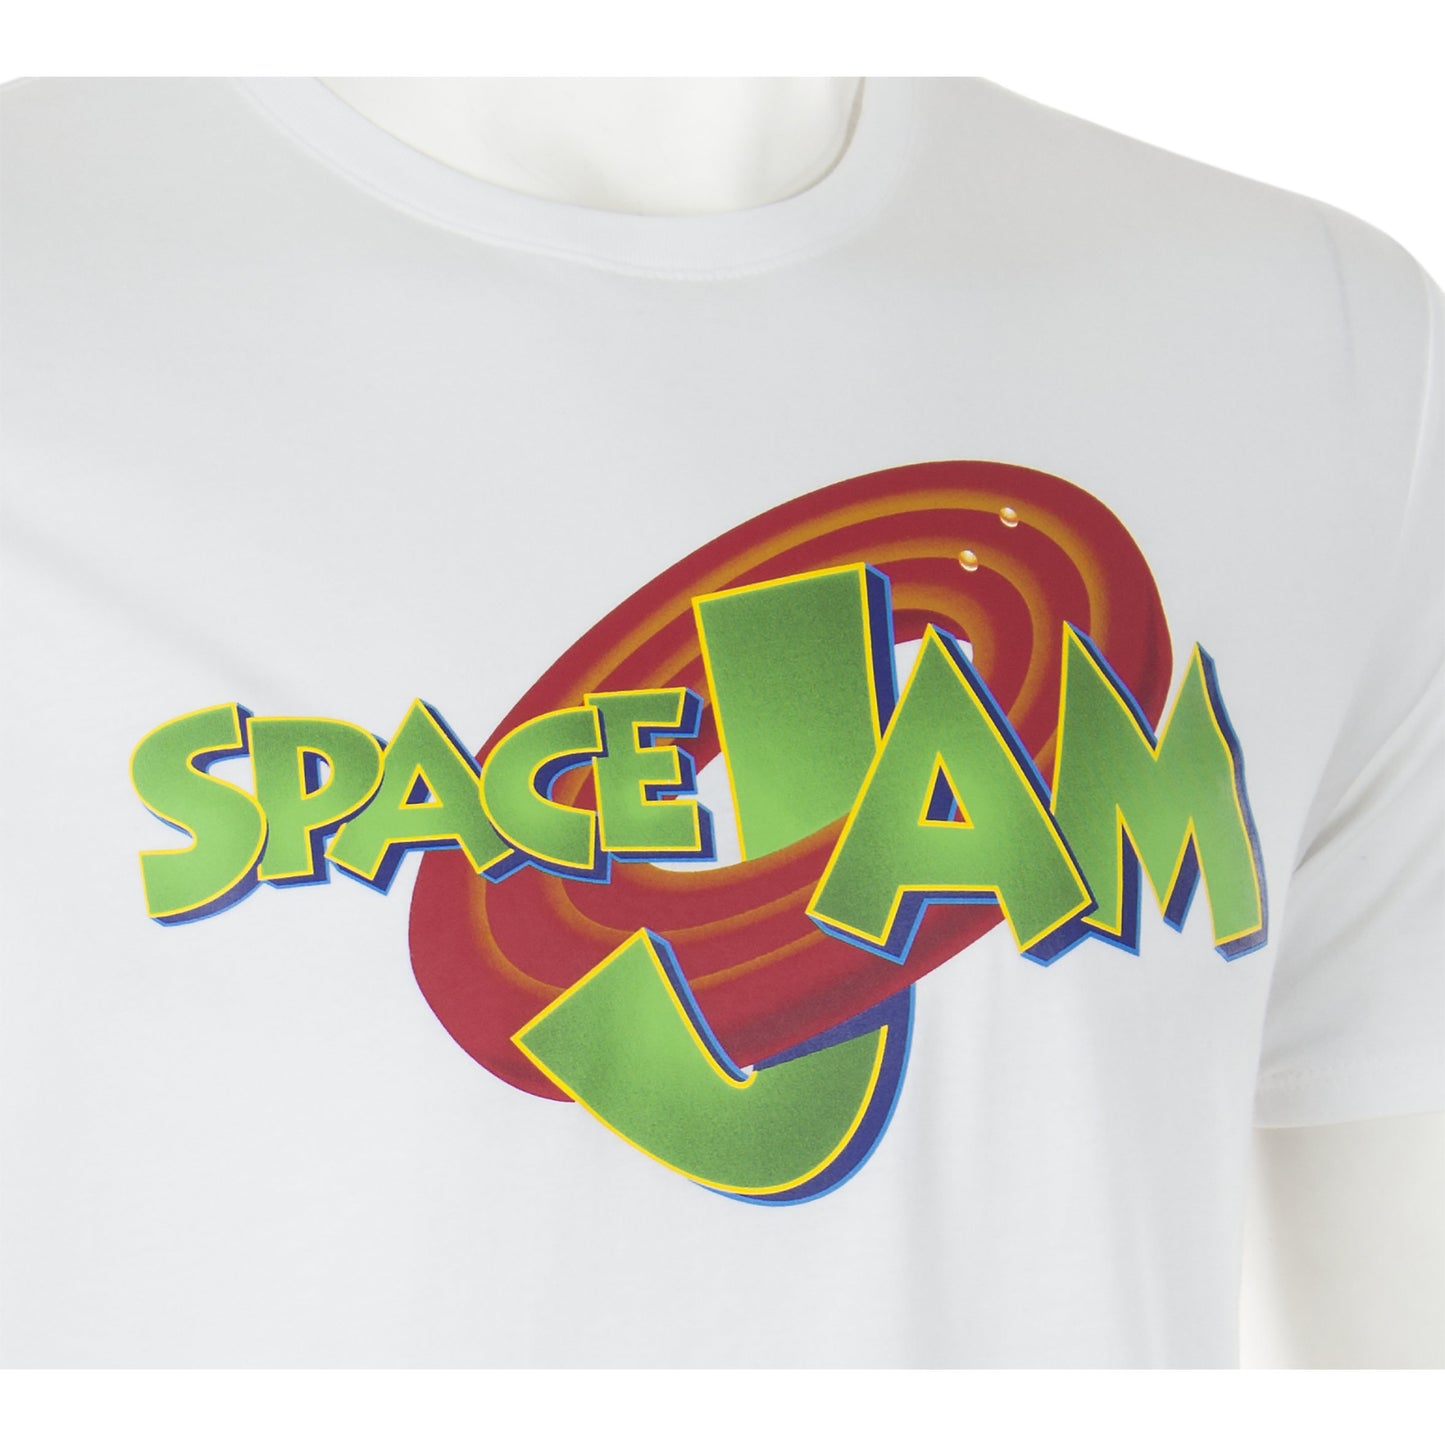 Jordan - Space Jam Shirt